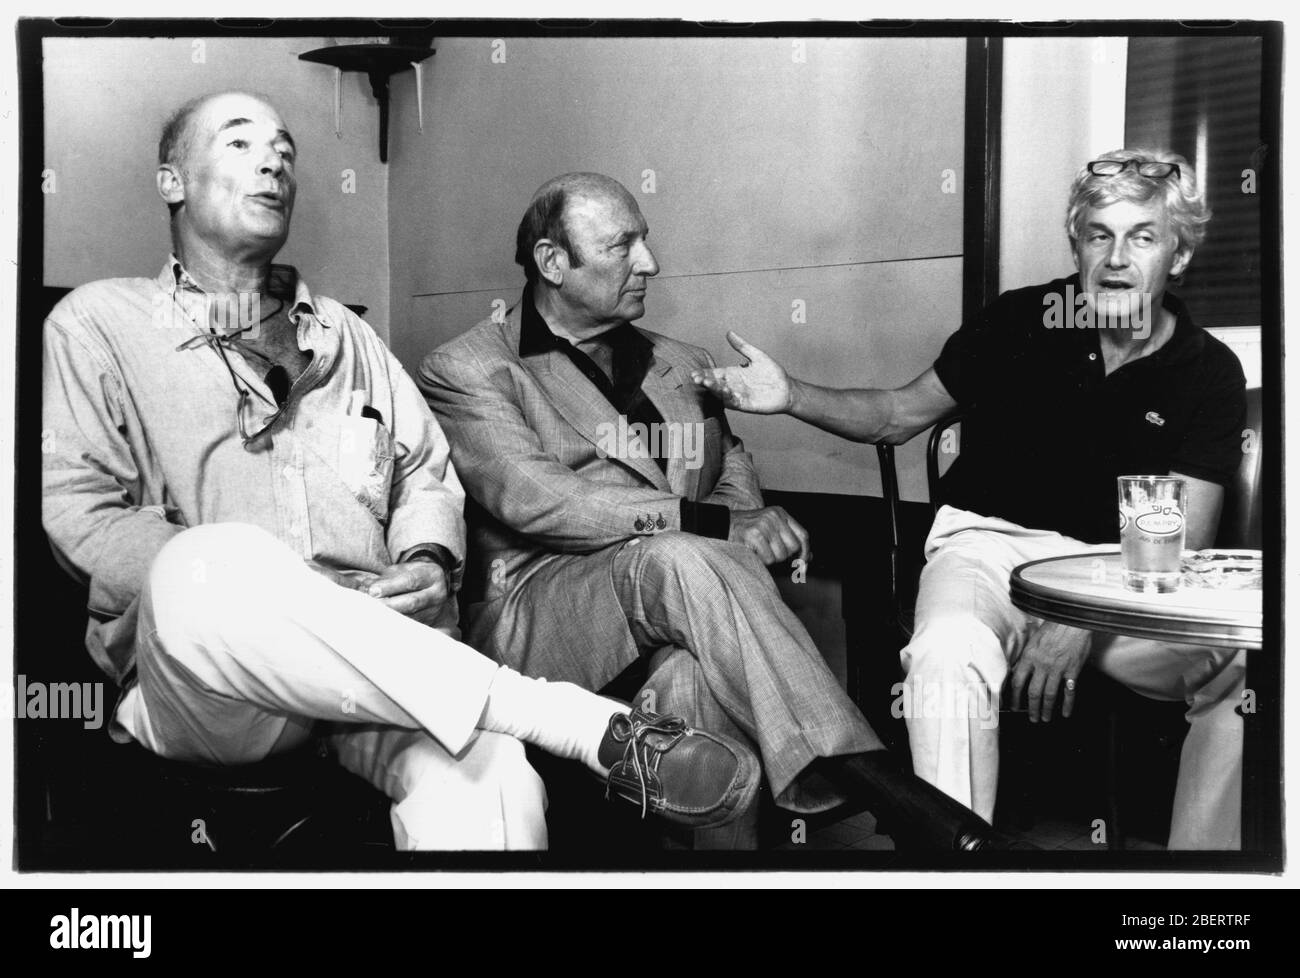 Bernard Haller, Frédéric Dard et Alain Chevallier assistent à la présentation du théâtre "San-Antonio", Lyon, 1990, France Banque D'Images